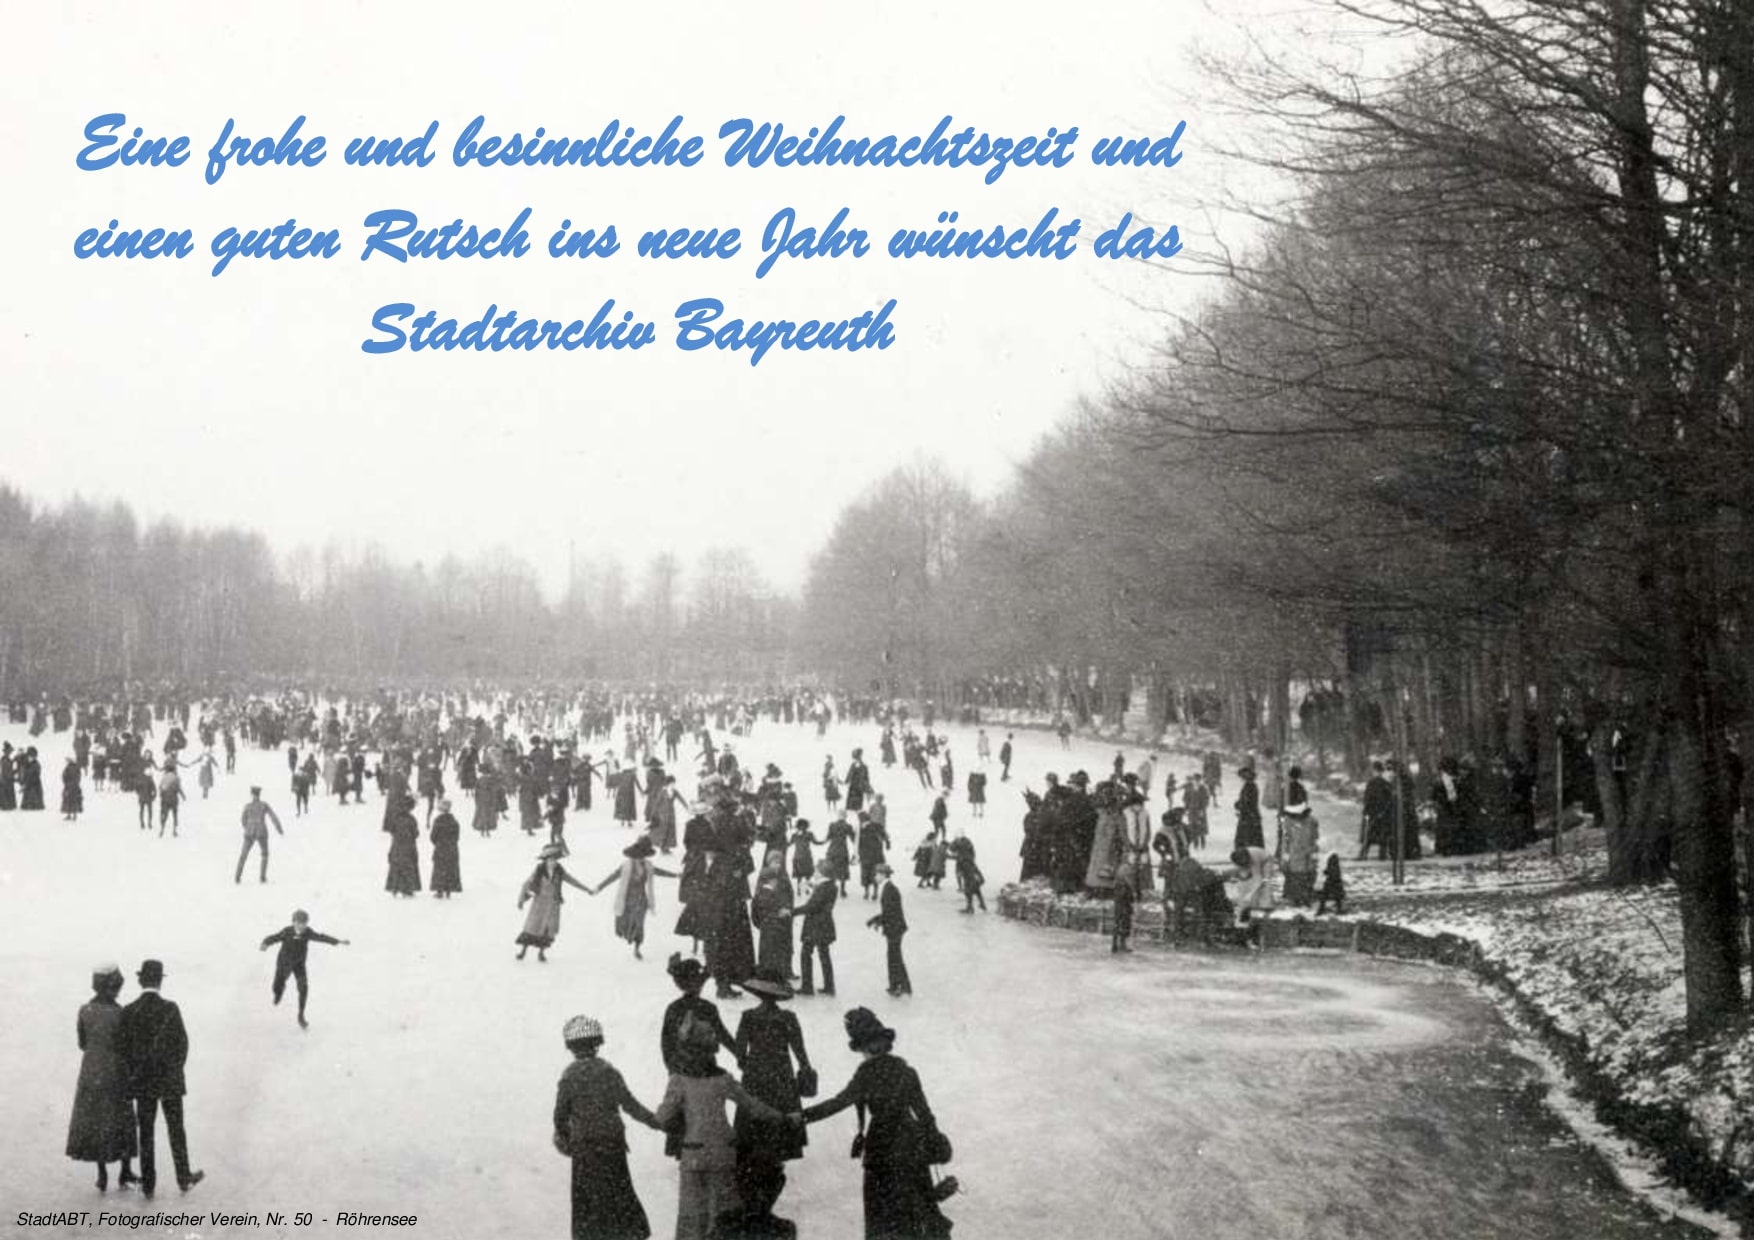 Eine frohe und besinnliche Weihnachtszeit und einen guten Rutsch wünscht das Stadtarchiv Bayreuth. Weihnachtsgruß des Stadtarchivs Bayreuth. Foto ca. 1910 - Schlittschuhlaufen auf dem Röhrensee.